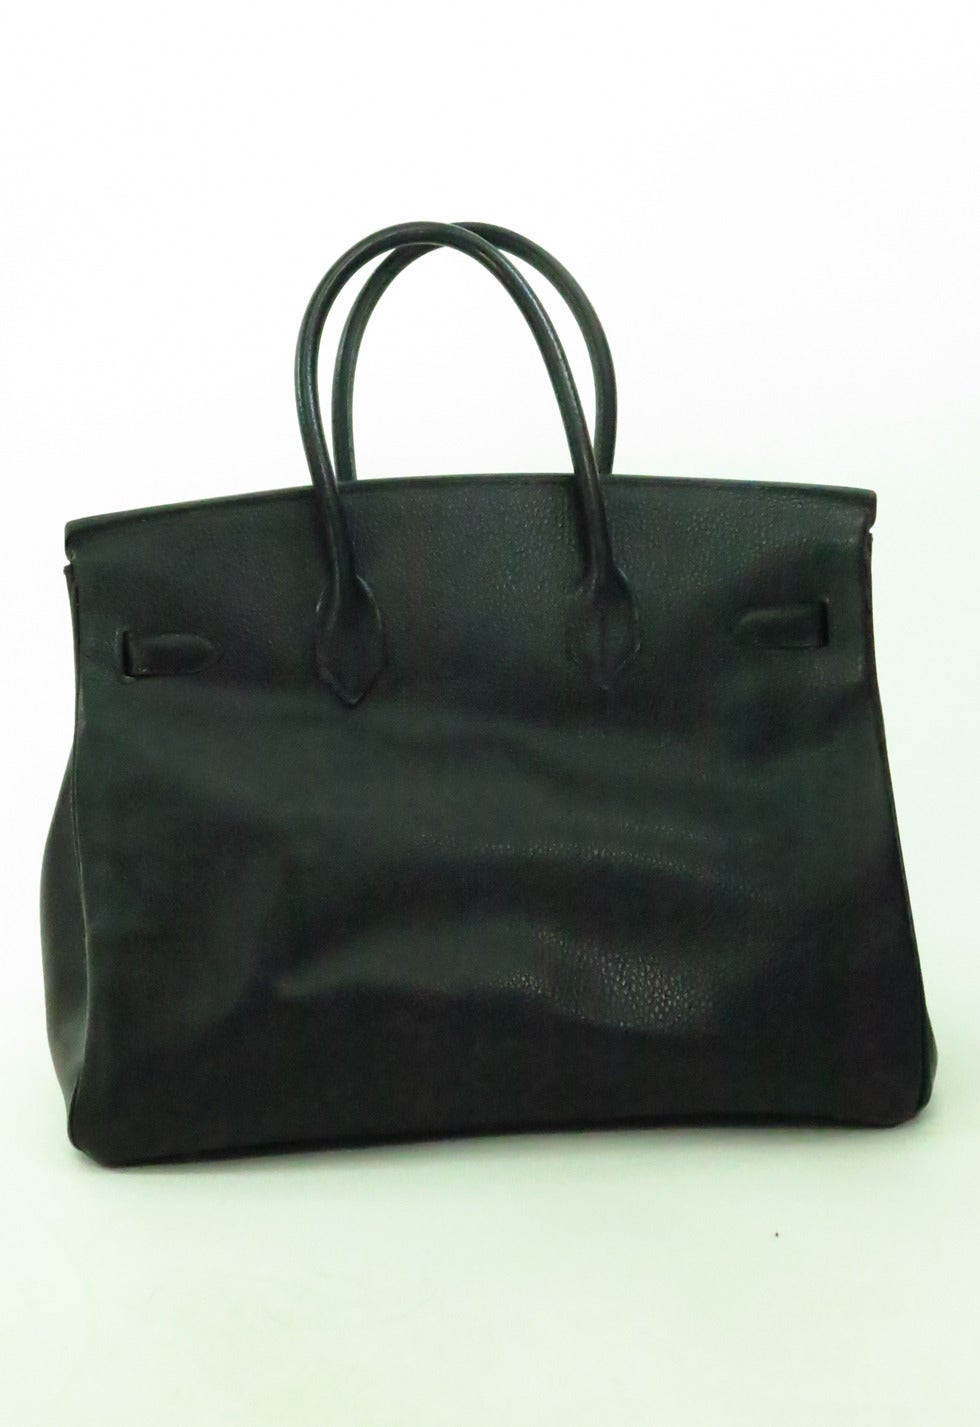 1998 Hermes black togo 35 Cm Birkin handbag with gold hardware 1